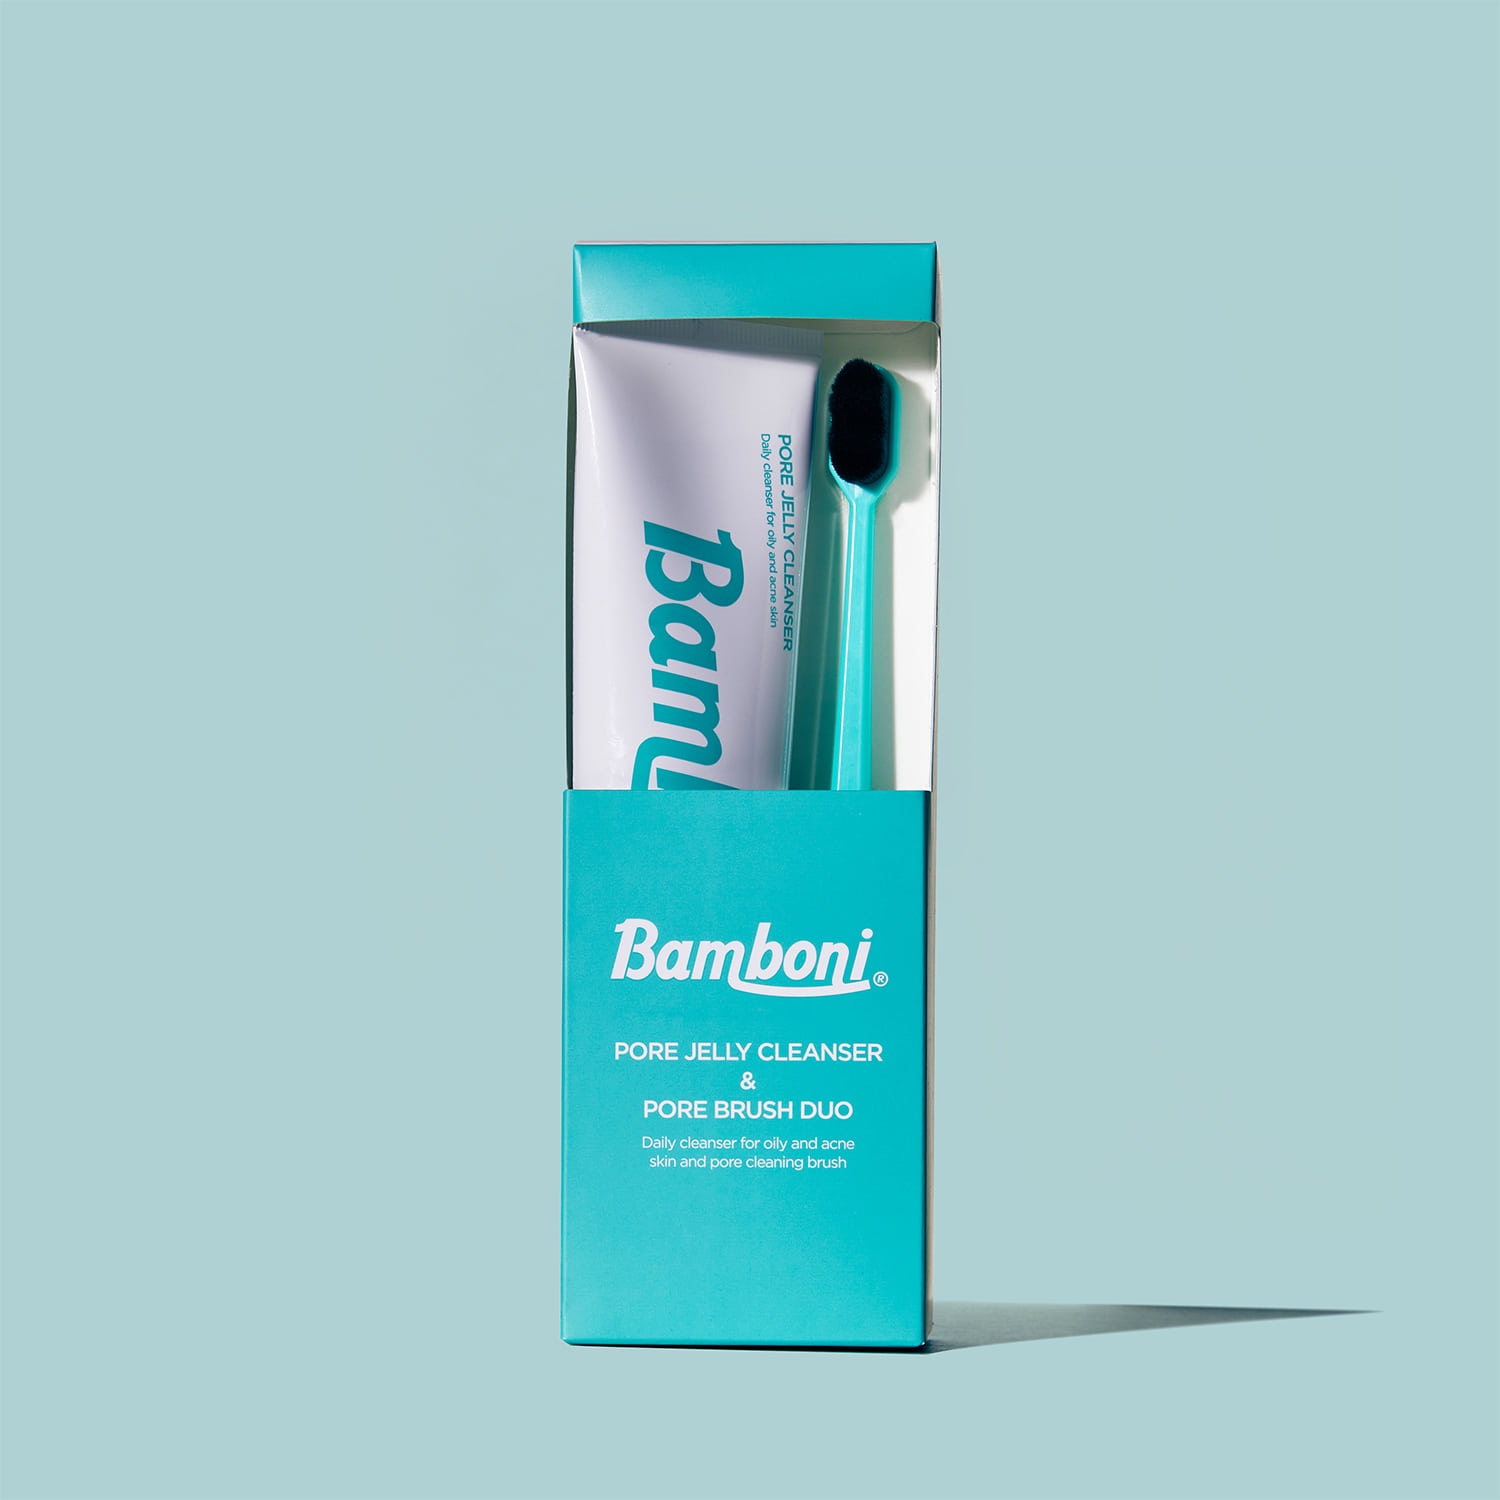 Bamboni(バンボニ) ポアジェリークレンザーの商品画像2 